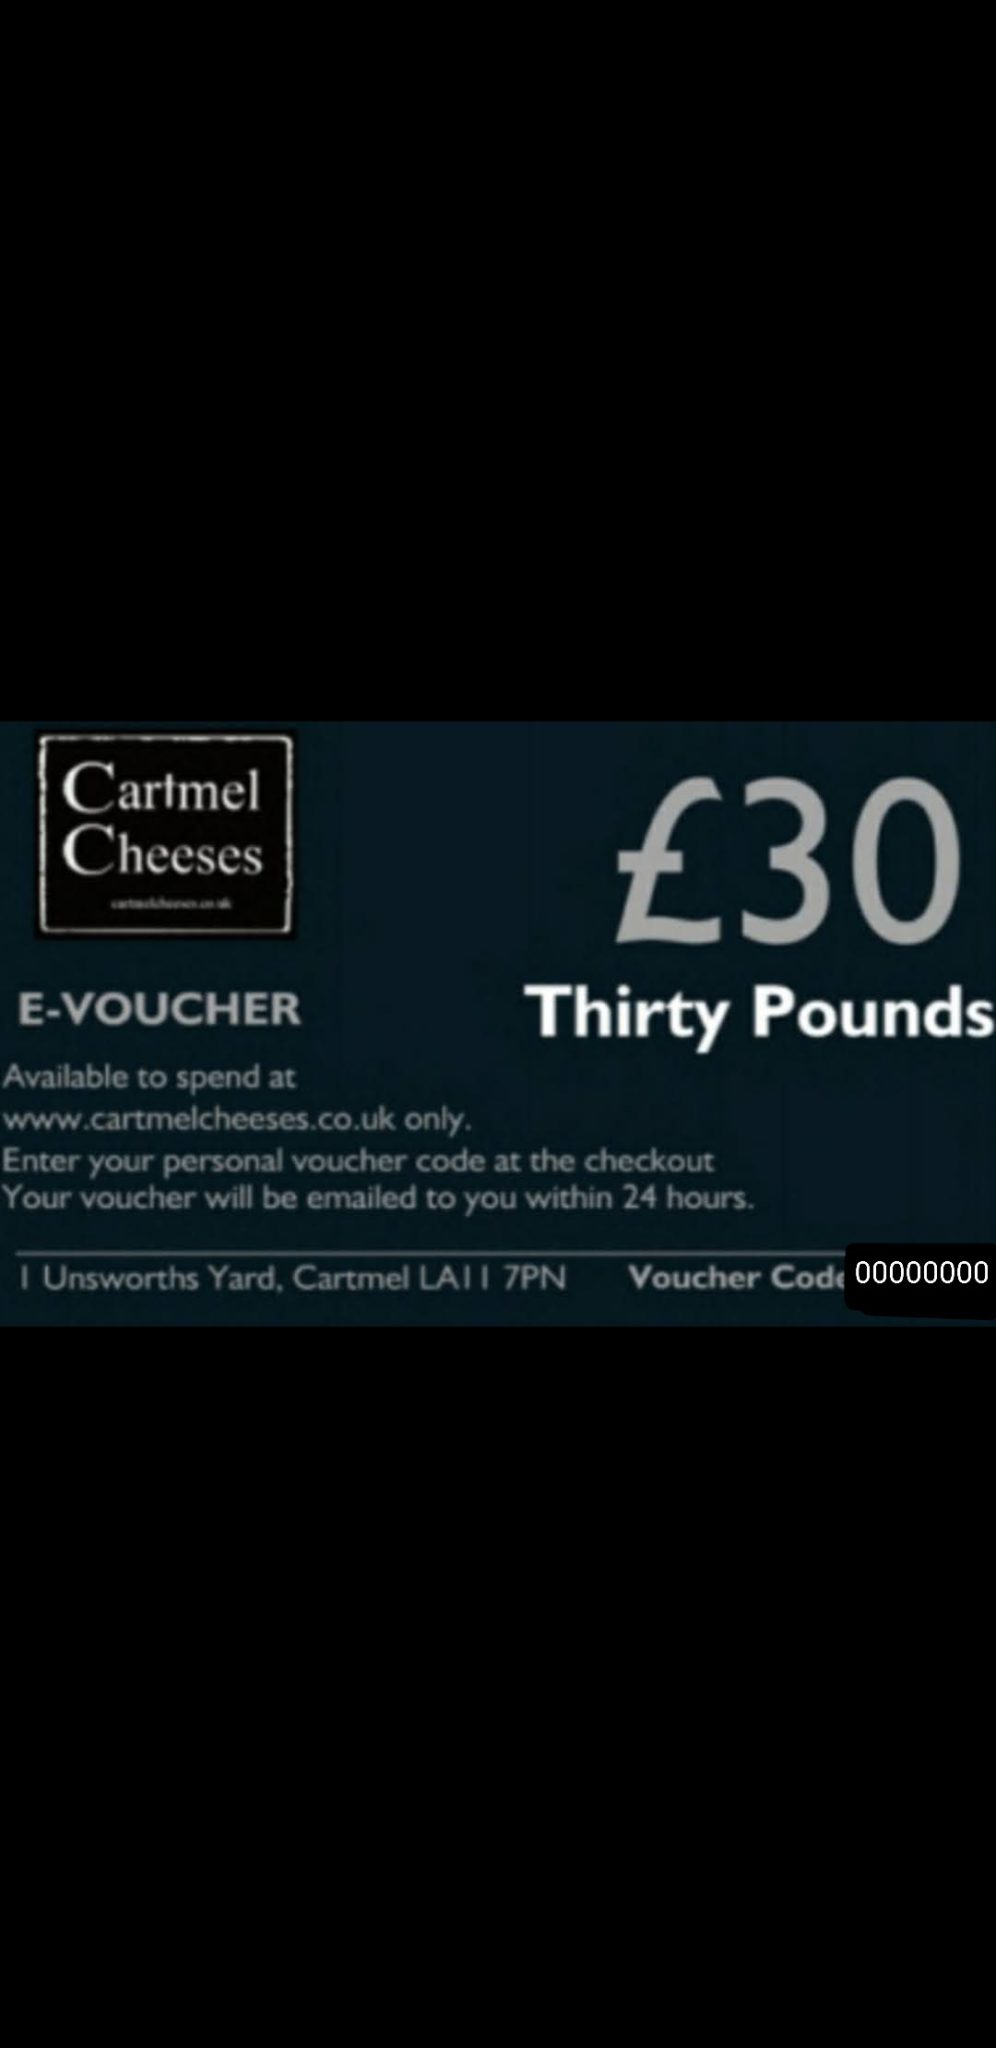 £30 E-Voucher